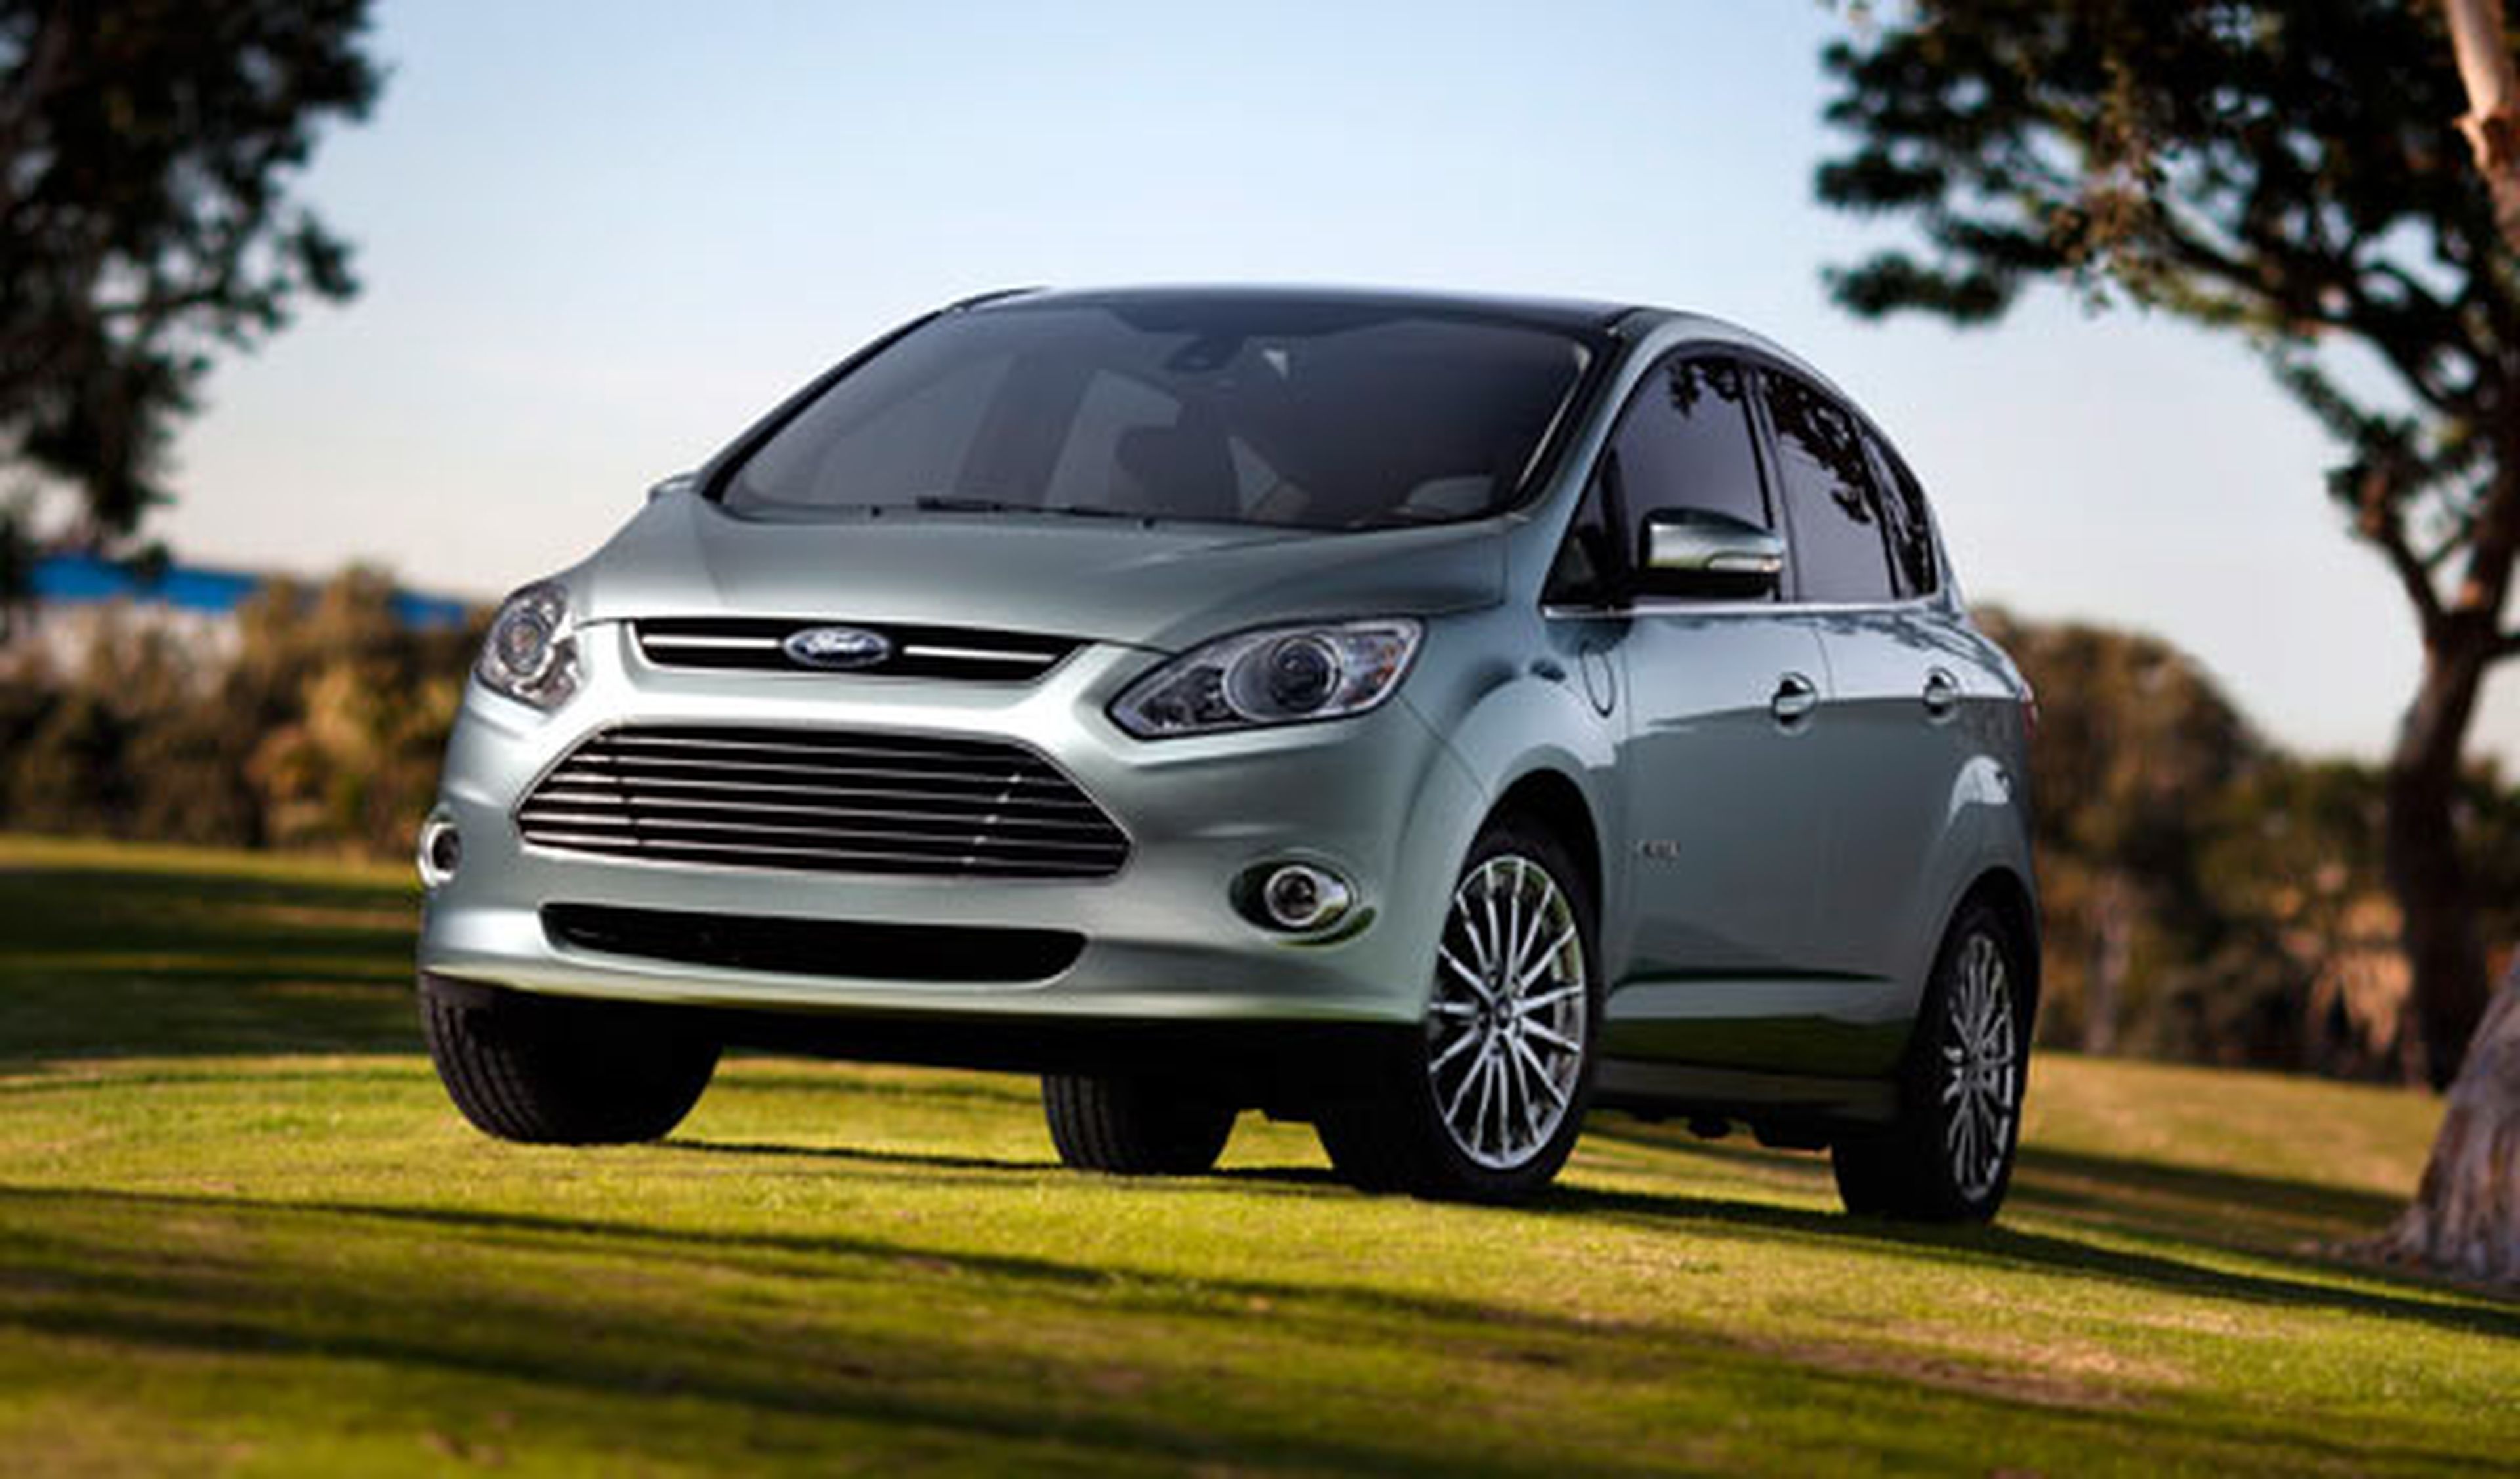 Ford presentará tres modelos ecológicos en Shangai